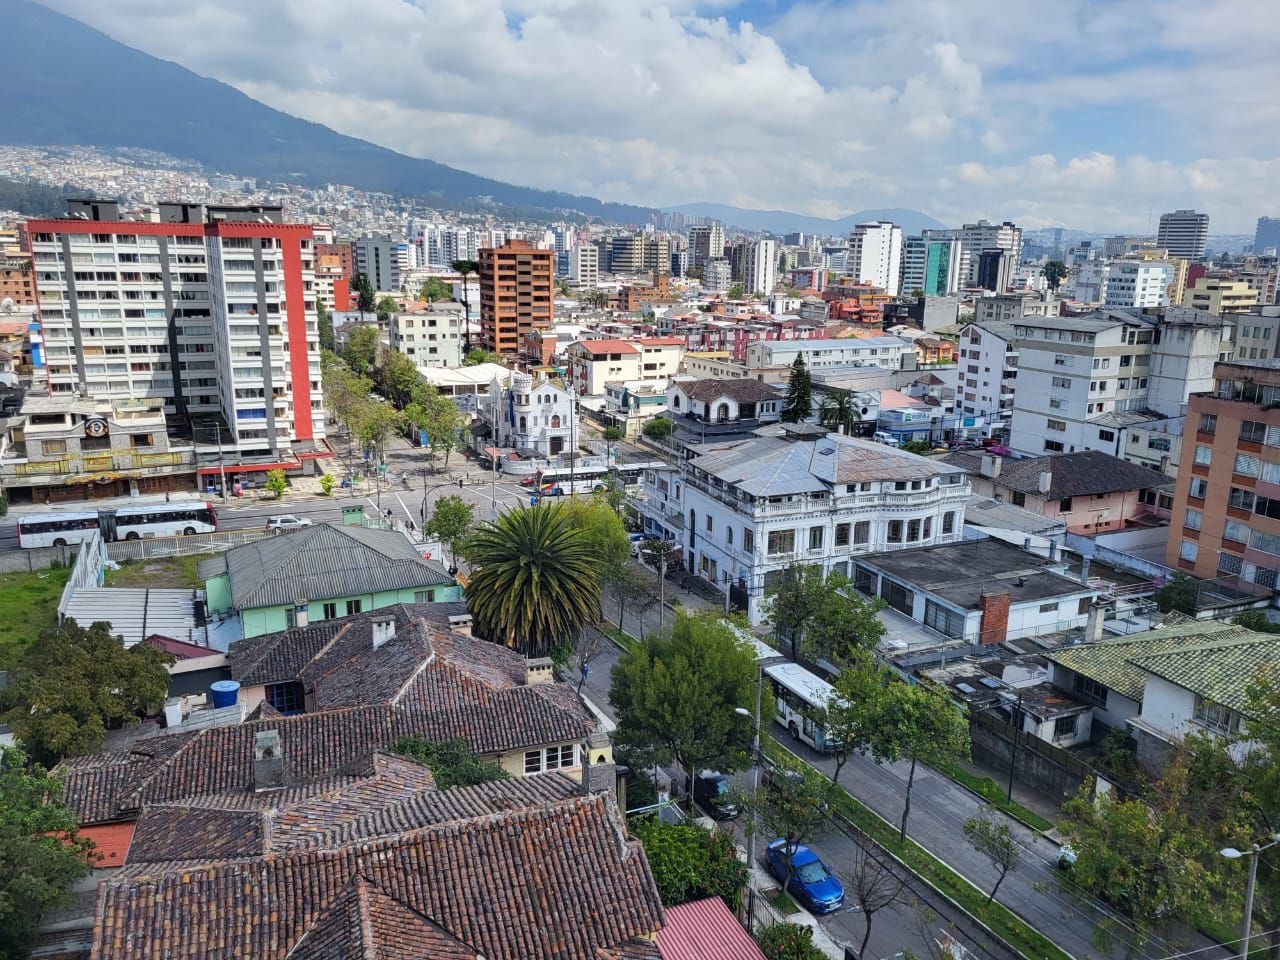 Concurso ambiental Huella Neutra pretende convertir a un barrio de Quito en un lugar cero emisiones de carbono y sostenible